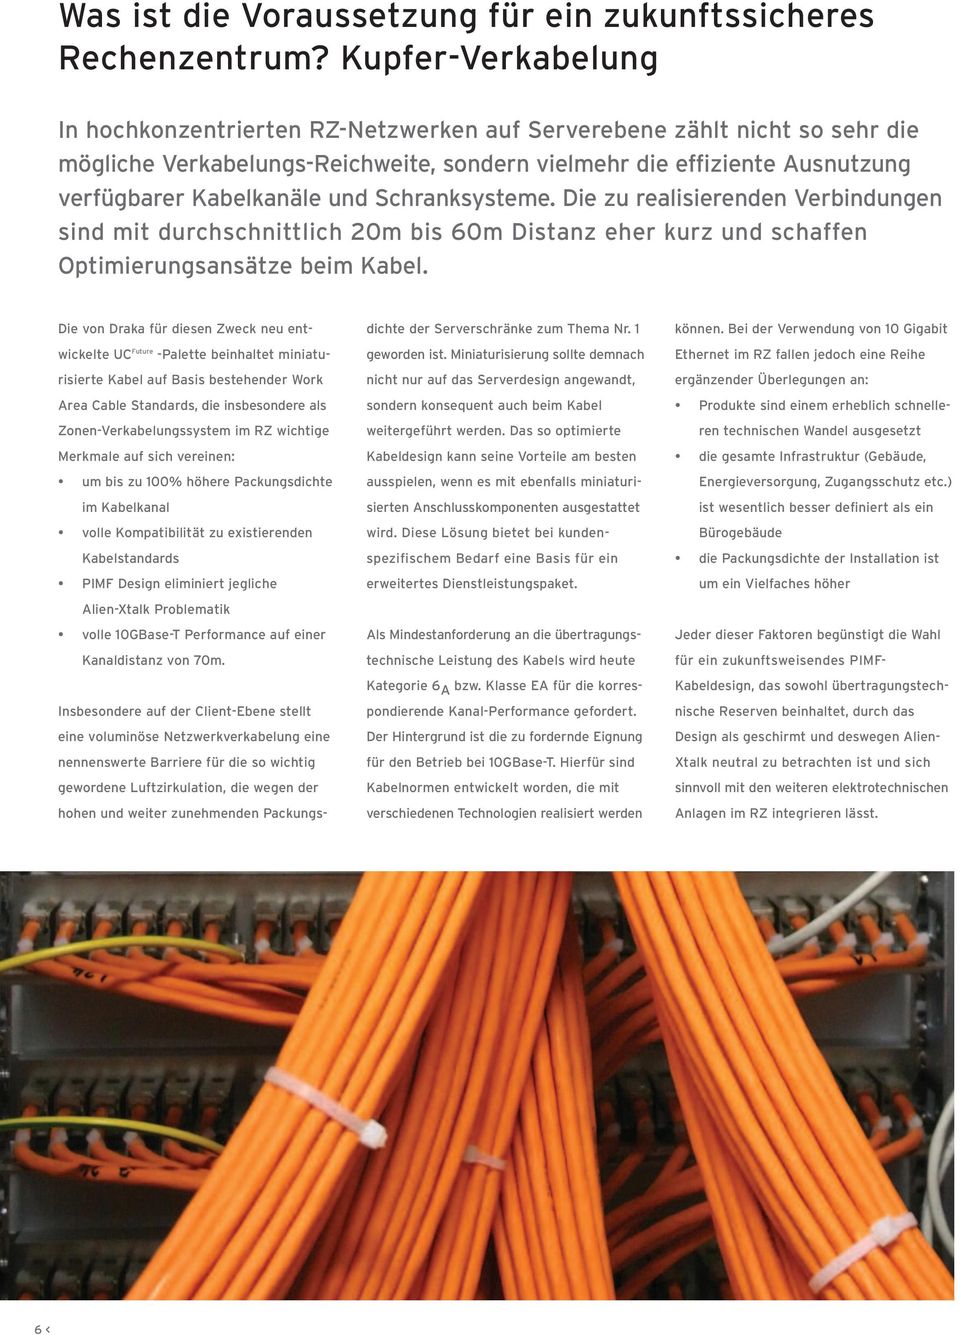 Schranksysteme. Die zu realisierenden Verbindungen sind mit durchschnittlich 20m bis 60m Distanz eher kurz und schaffen Optimierungsansätze beim Kabel.